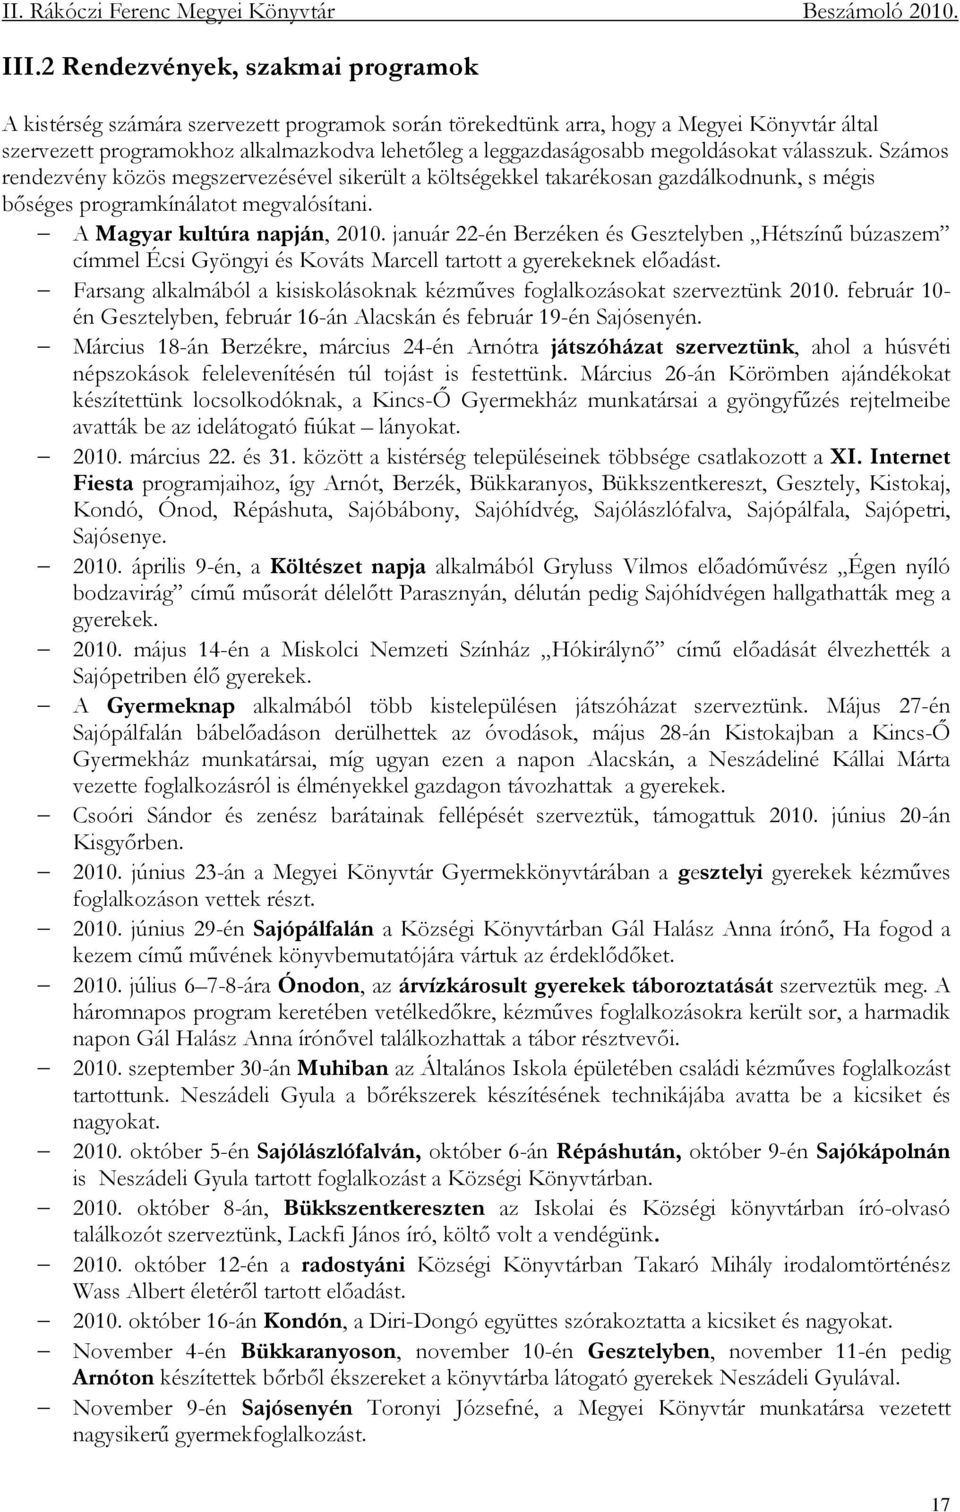 január 22-én Berzéken és Gesztelyben Hétszínő búzaszem címmel Écsi Gyöngyi és Kováts Marcell tartott a gyerekeknek elıadást.